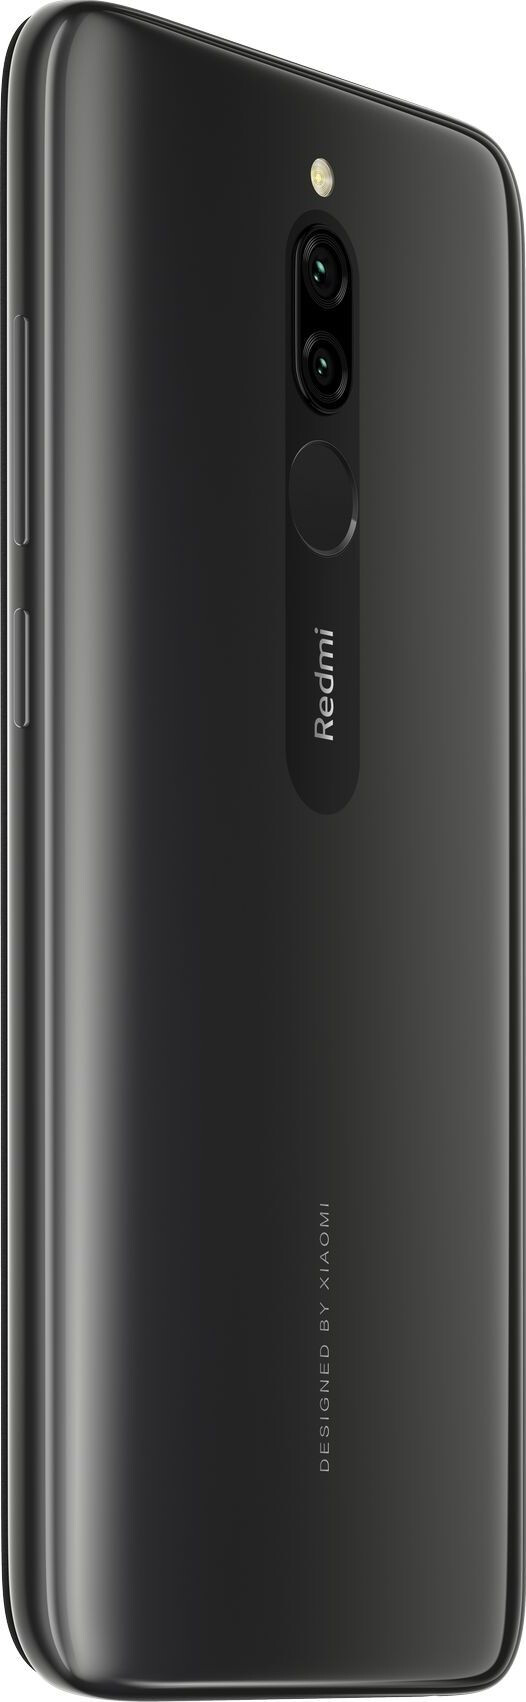 Xiaomi 8 Onyx Black